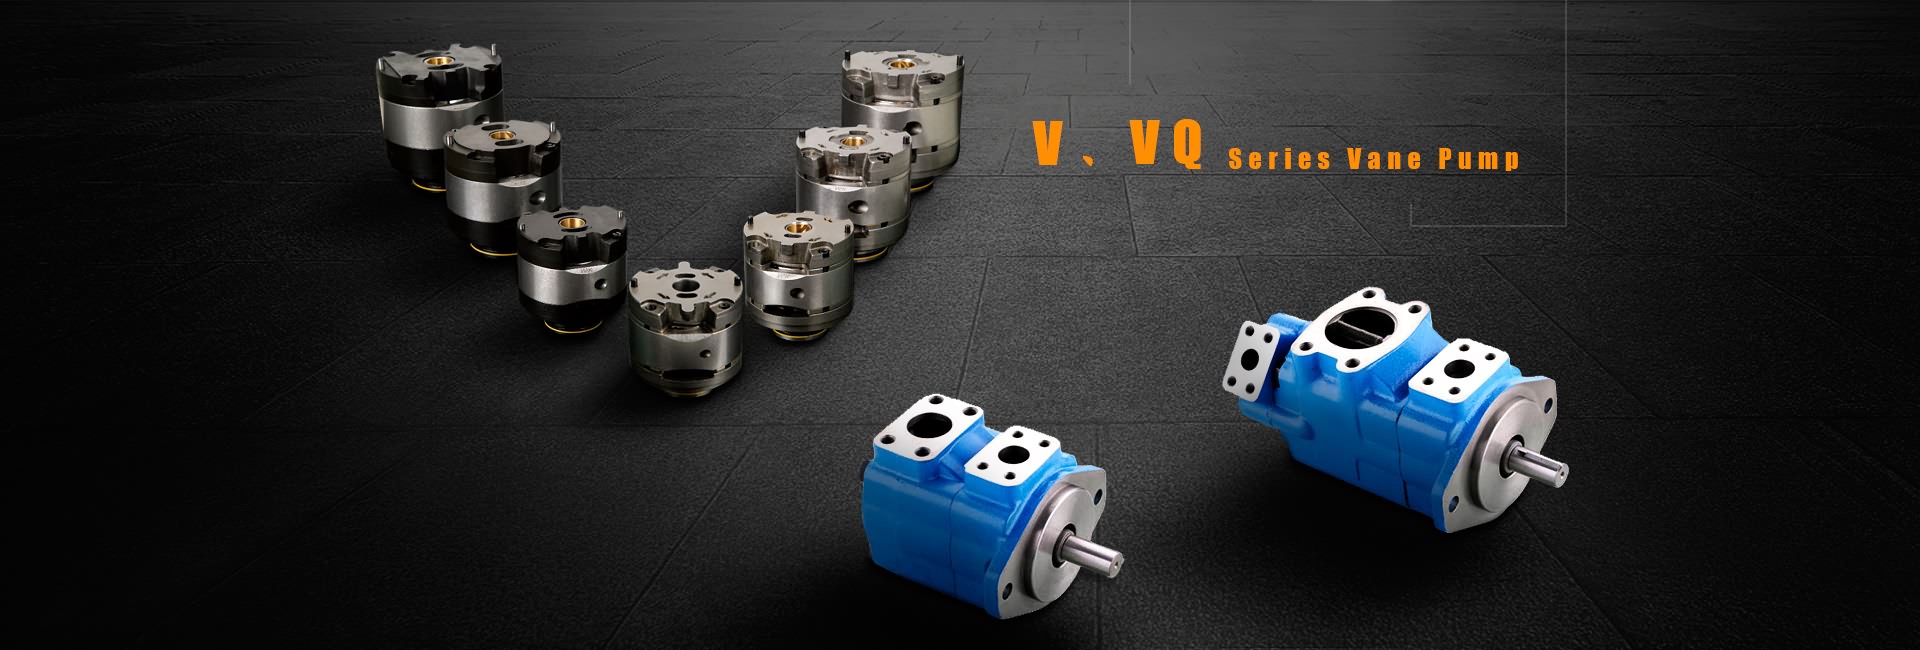 V, VQ Series Vane pompa